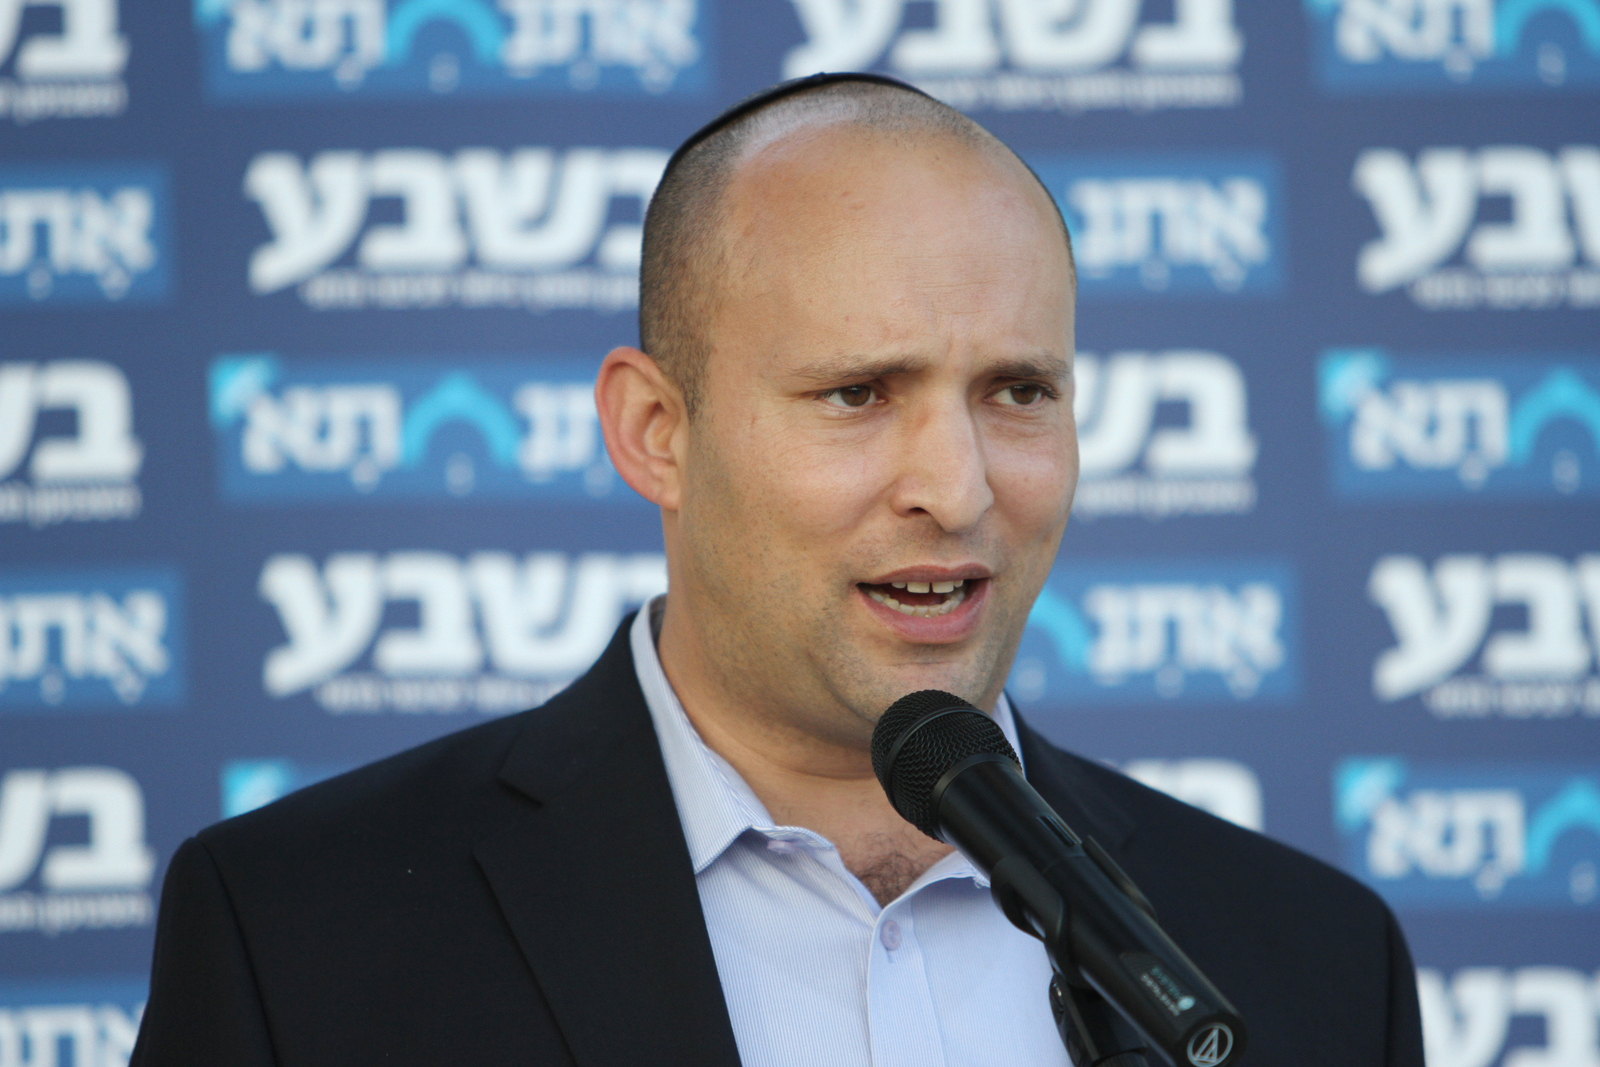 Megegyeztek a koalíciós pártok a biztonsági kabinet reformjáról Izraelben